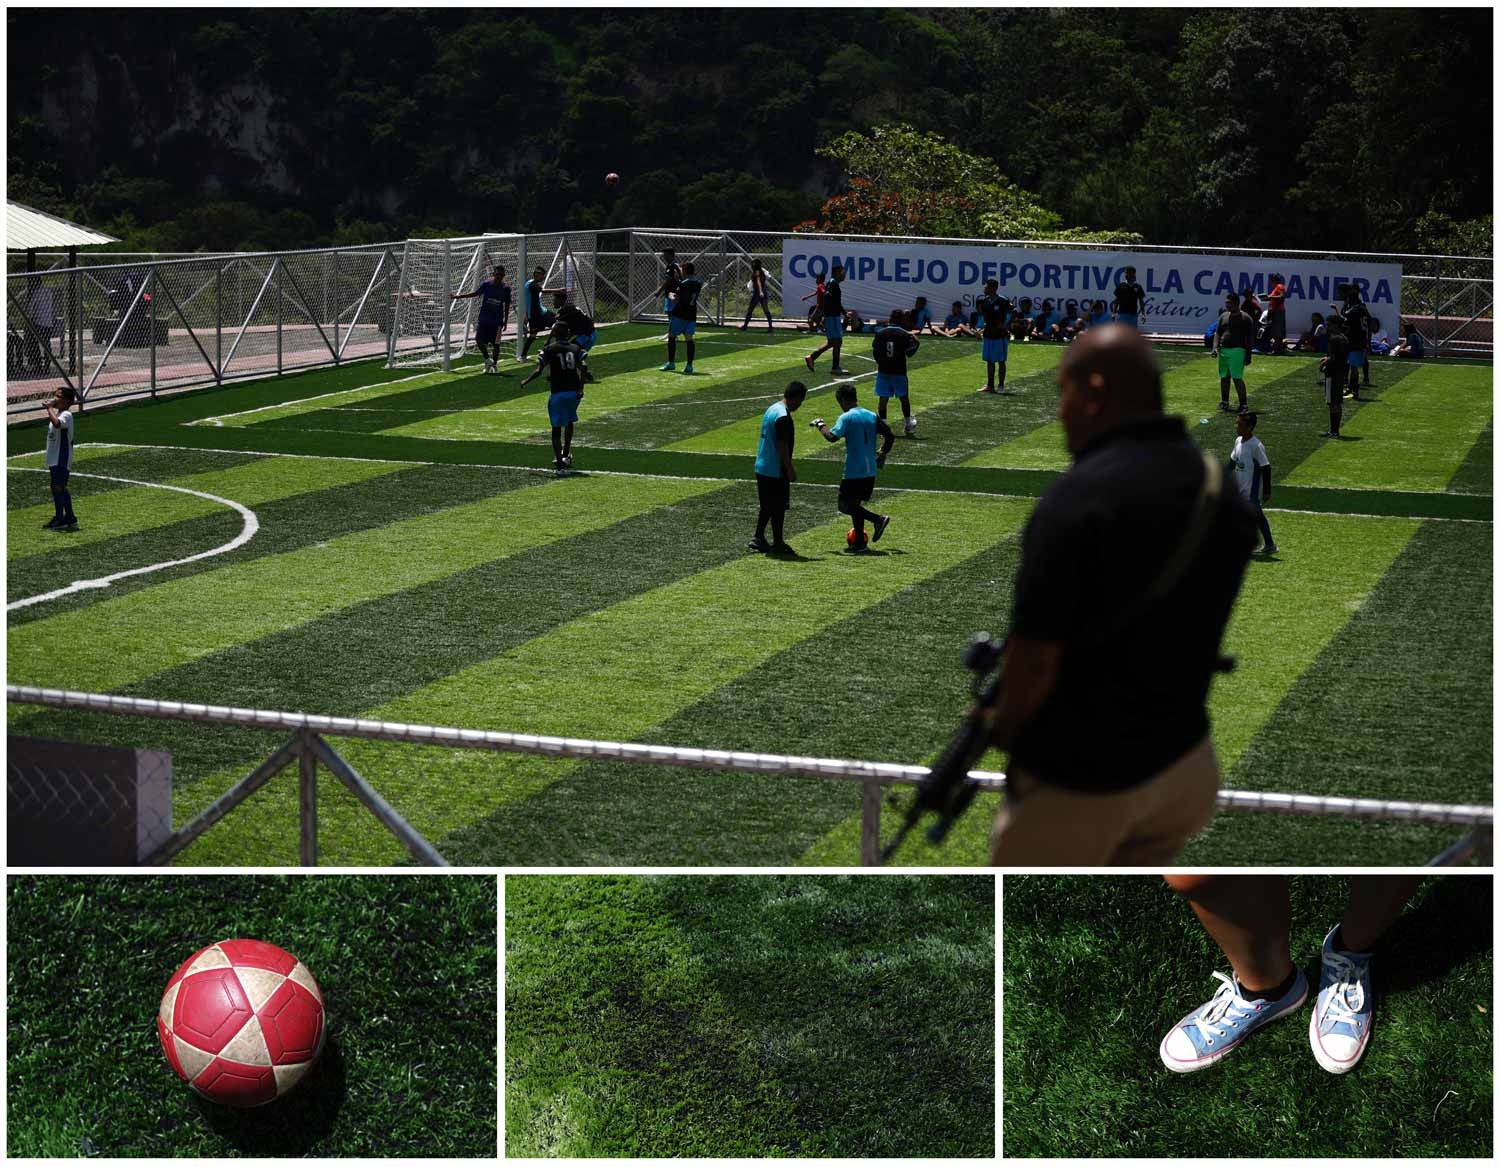  Na cidade de Soyapango, em El Salvador, v&aacute;rias crian&ccedil;as jogam futebol antes da inaugura&ccedil;&atilde;o de um novo complexo desportivo. Do lado de fora das grades do campo v&ecirc;-se um homem a segurar uma arma. Foto: Jose Cabezas - Reuters 